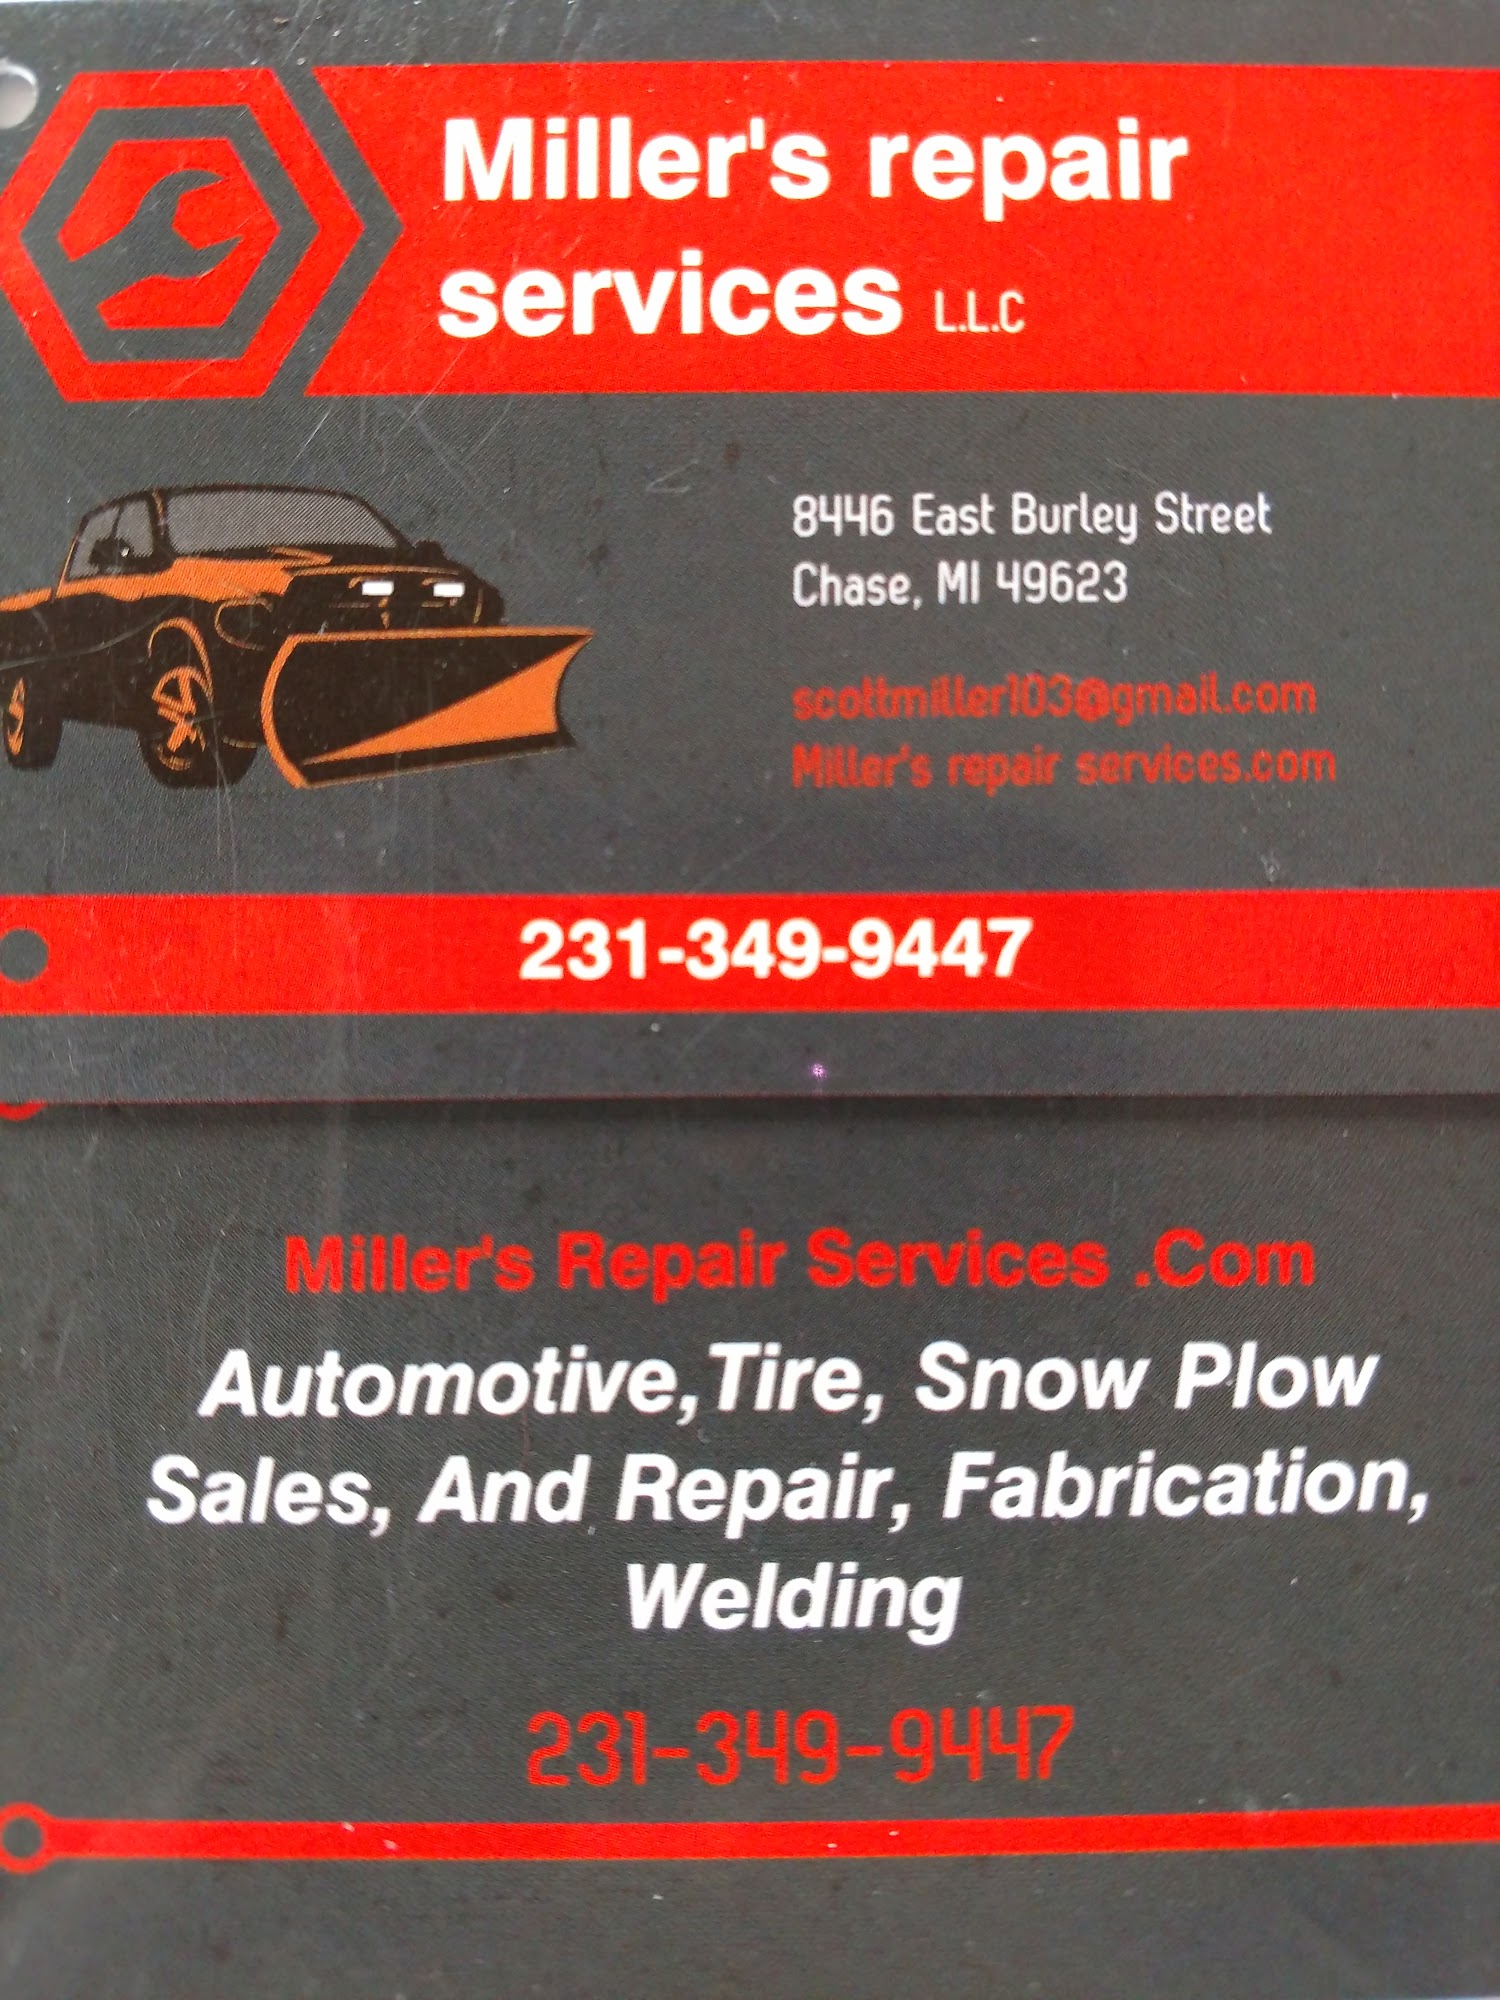 Miller's repair services.com